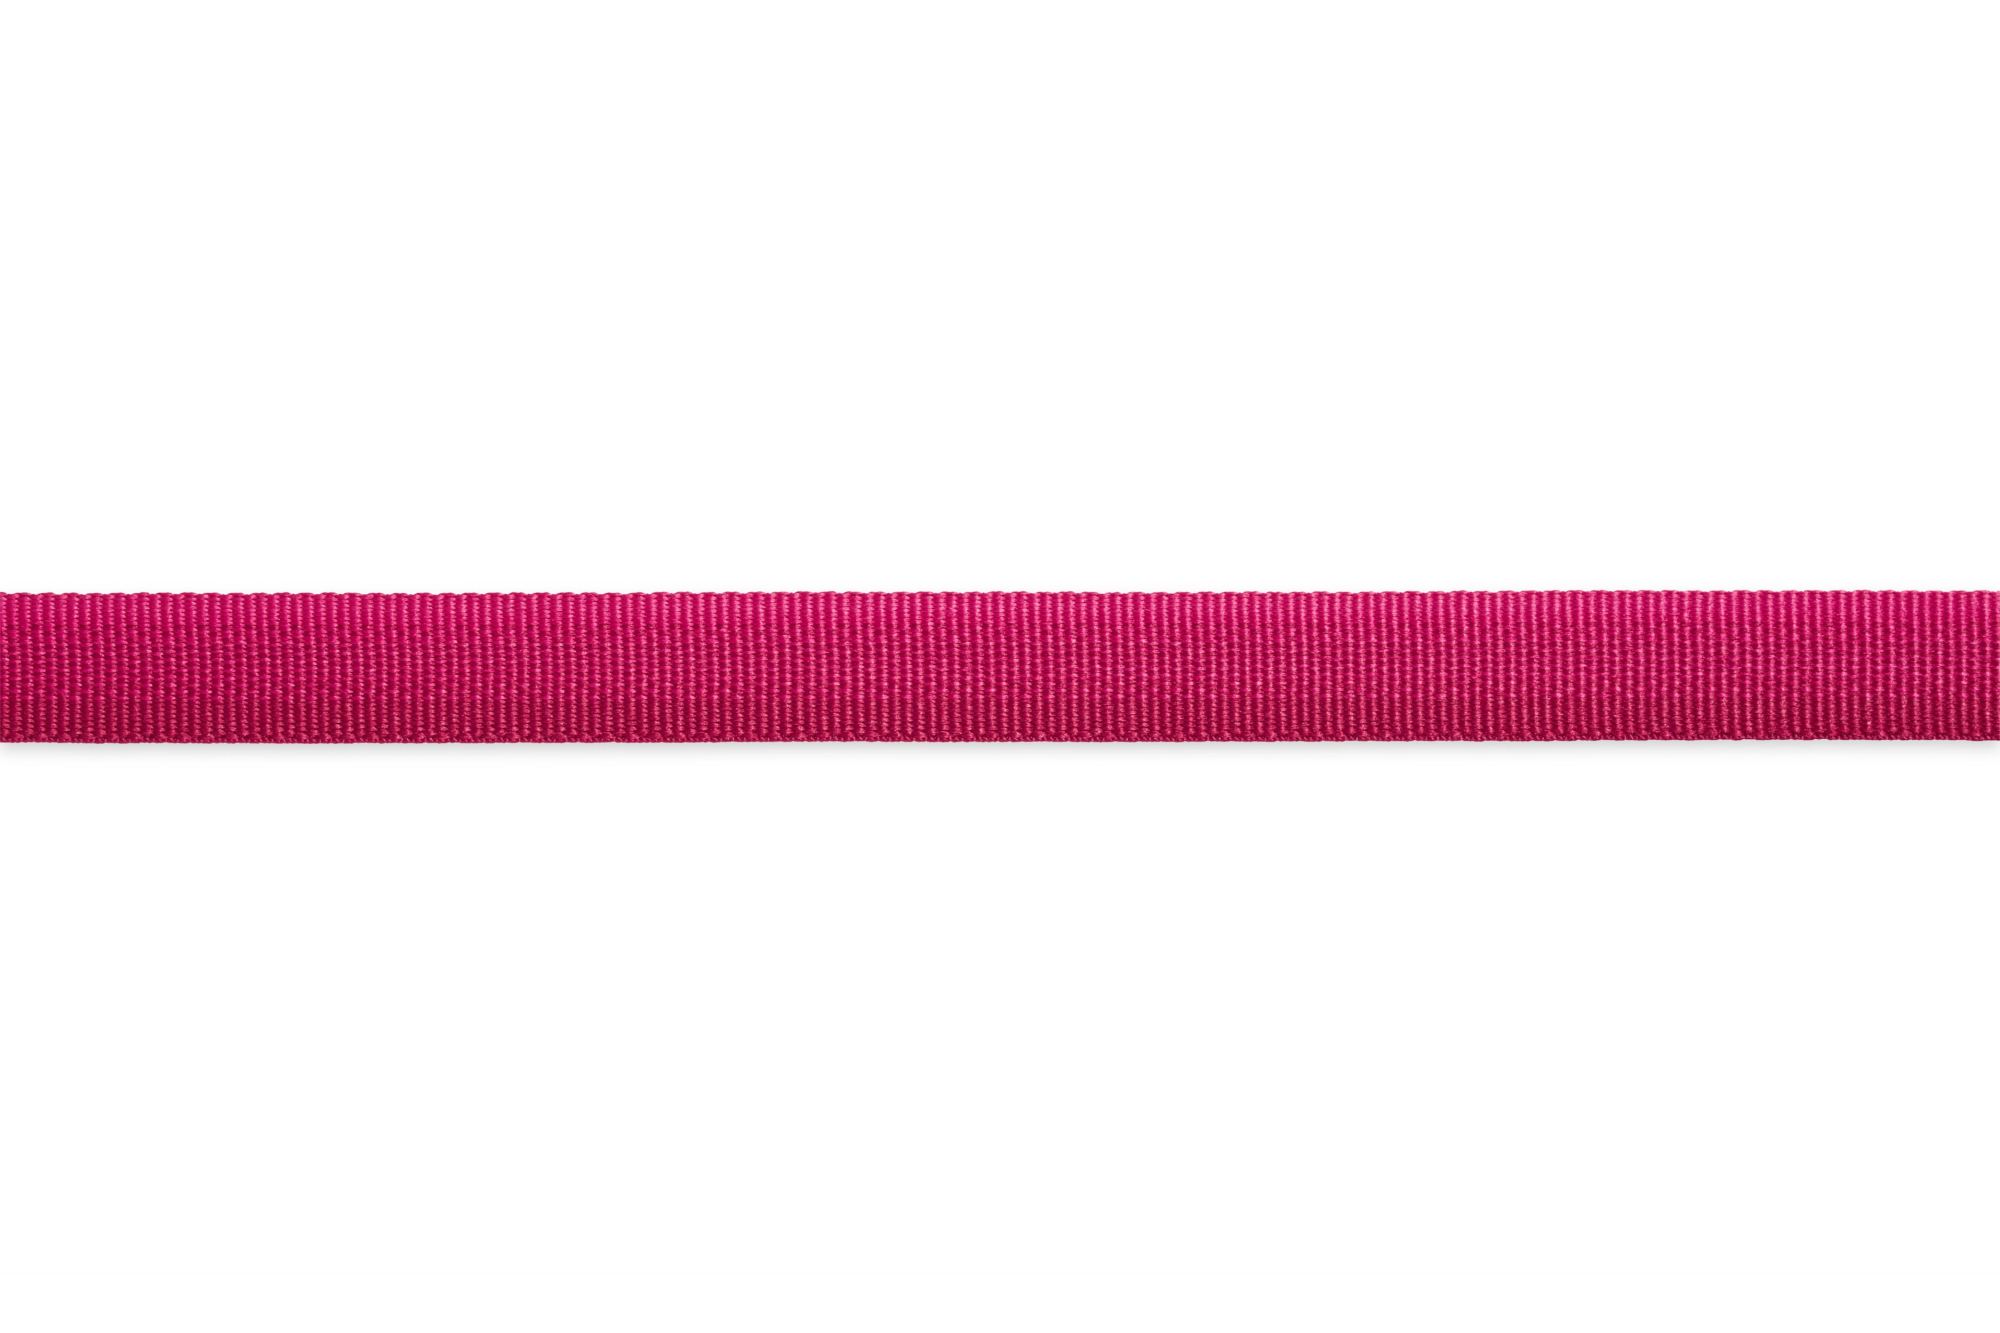 Collare Front Range di Ruffwear Hibiscus Pink - diverse taglie disponibili